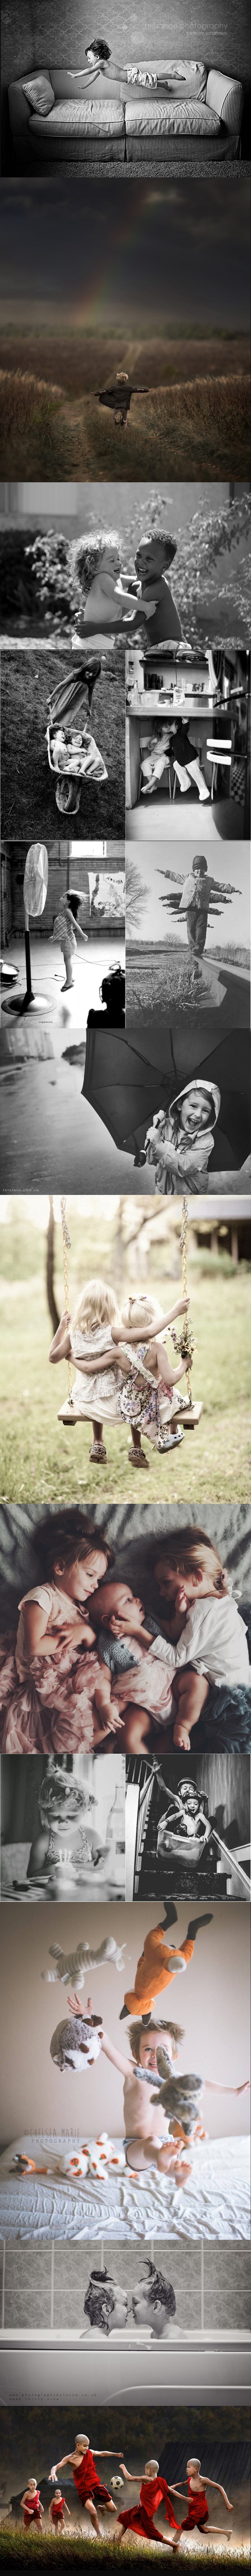 Ove predivne fotografije vratit će vas u najljepše doba života - djetinjstvo